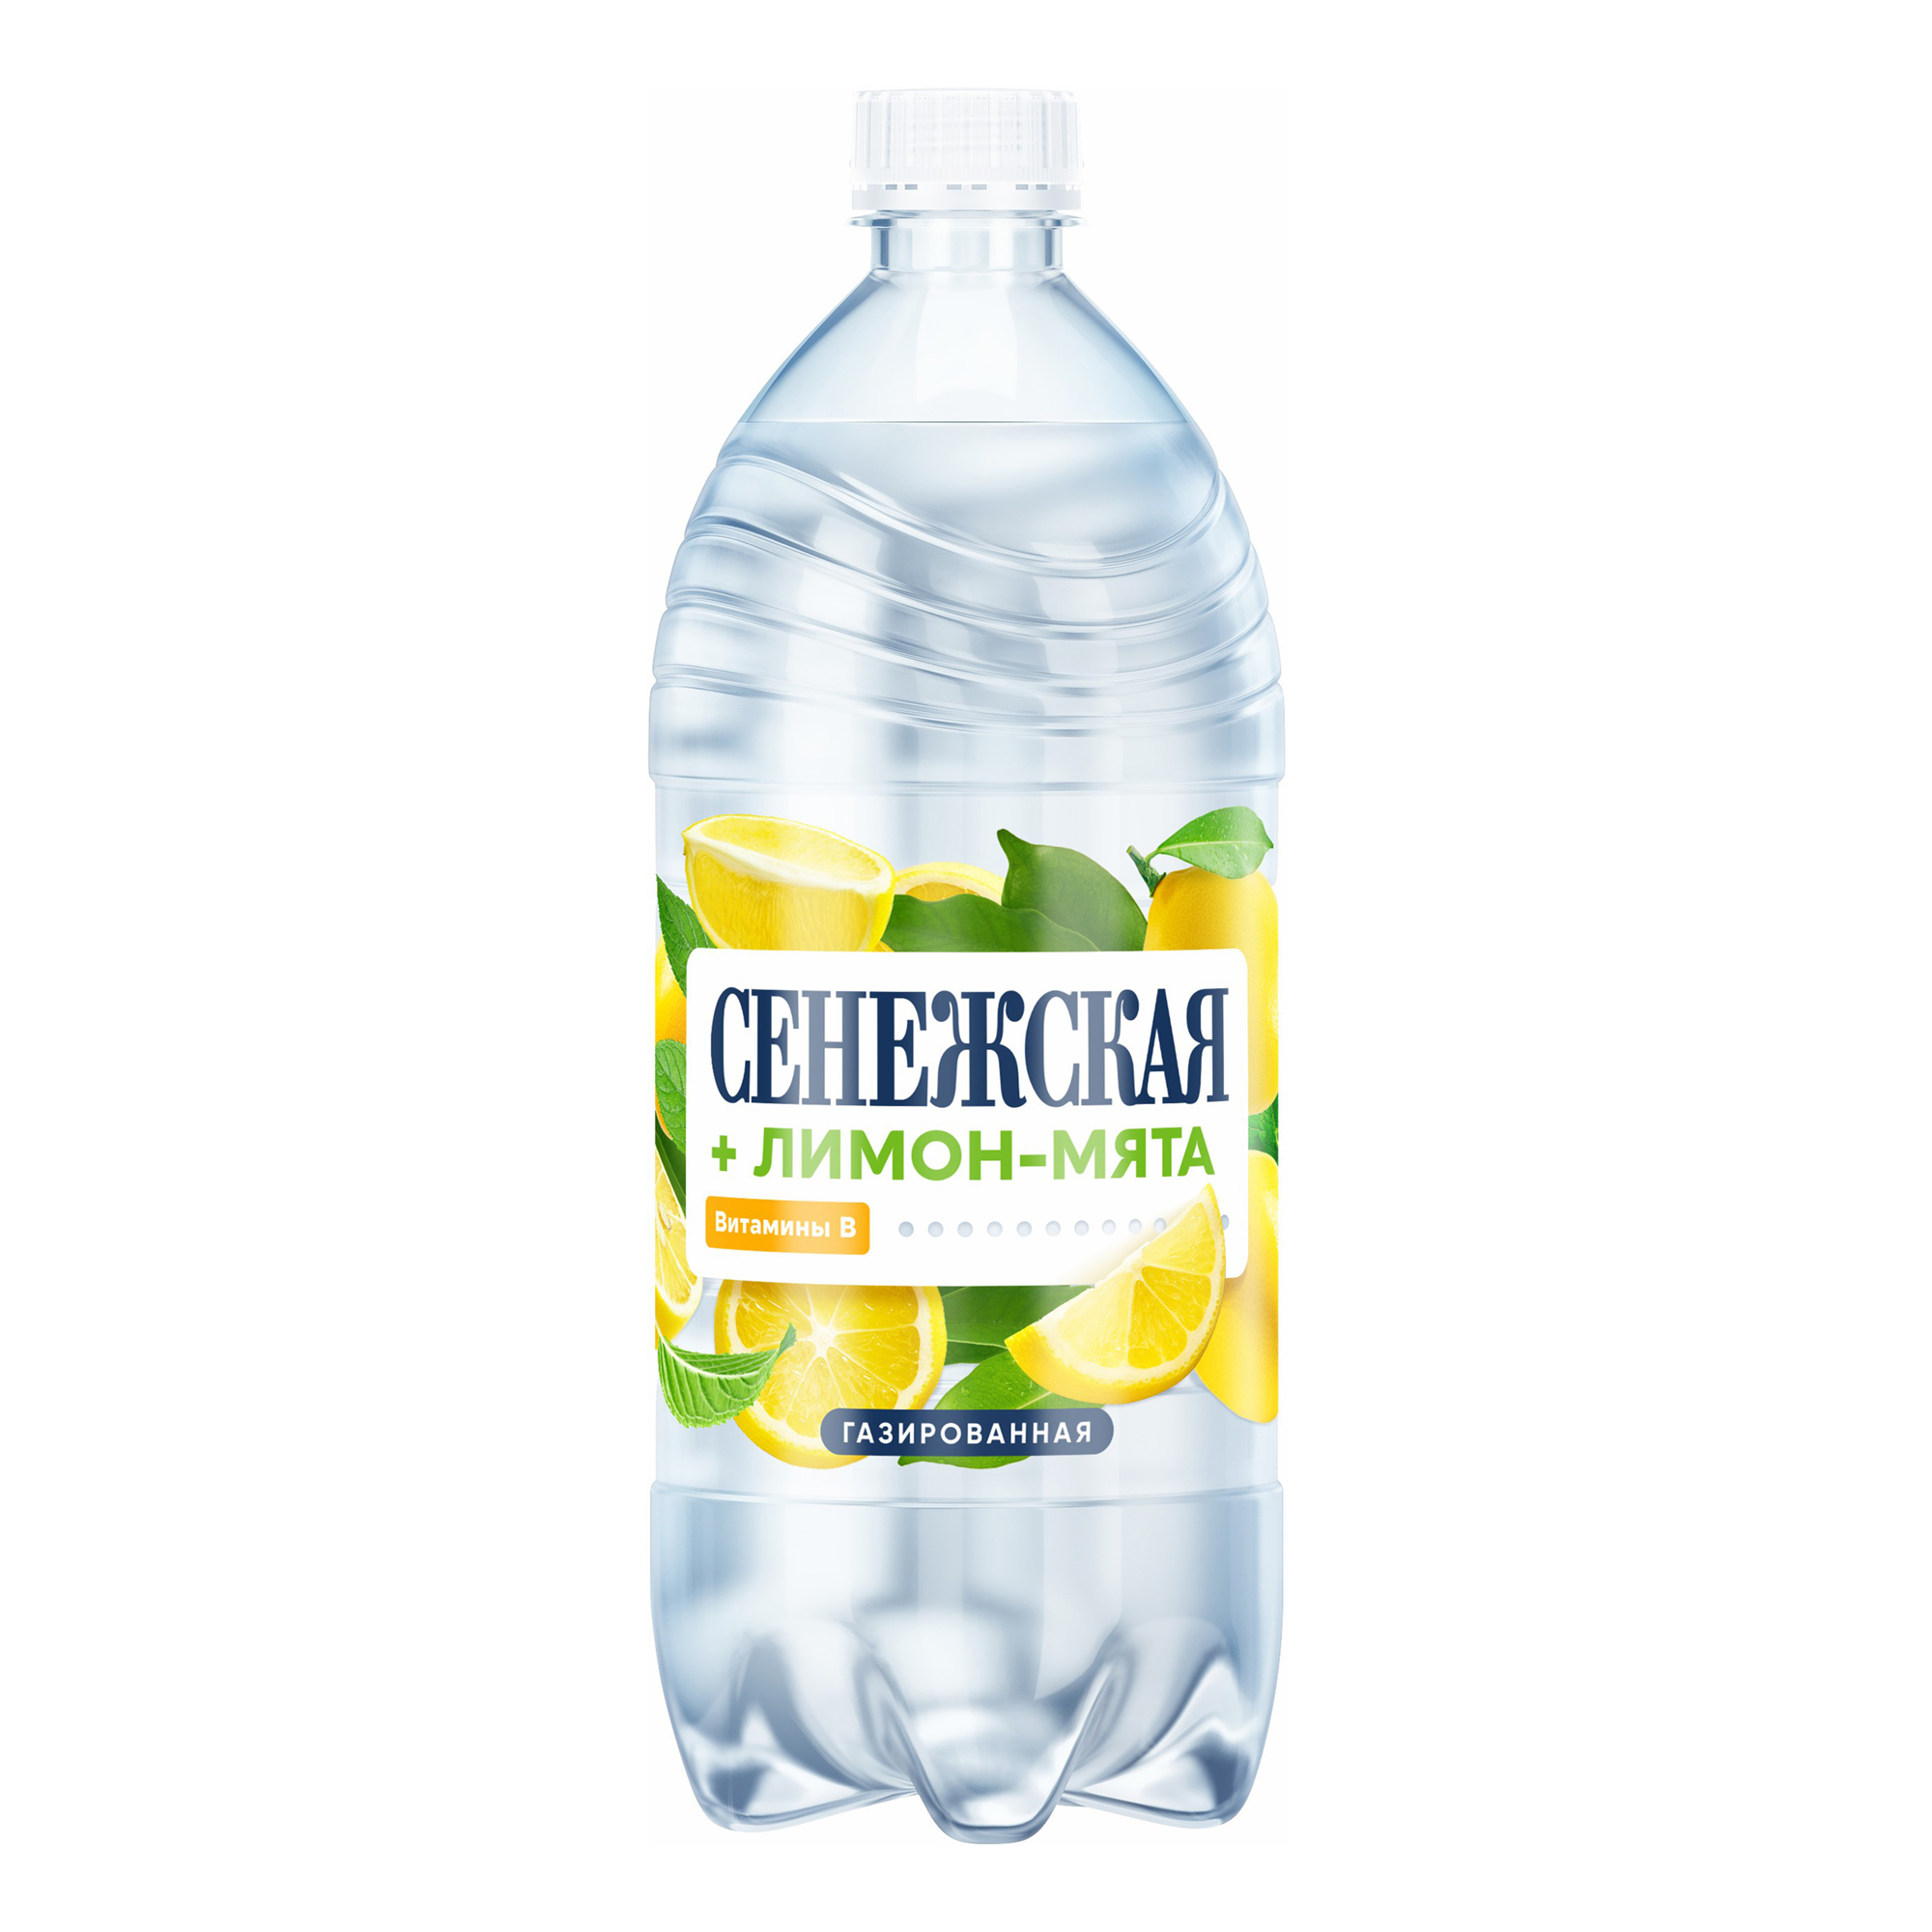 Вода питьевая Сенежская лимон-мята газированная 1 л - купить в Мегамаркет, цена на Мегамаркет